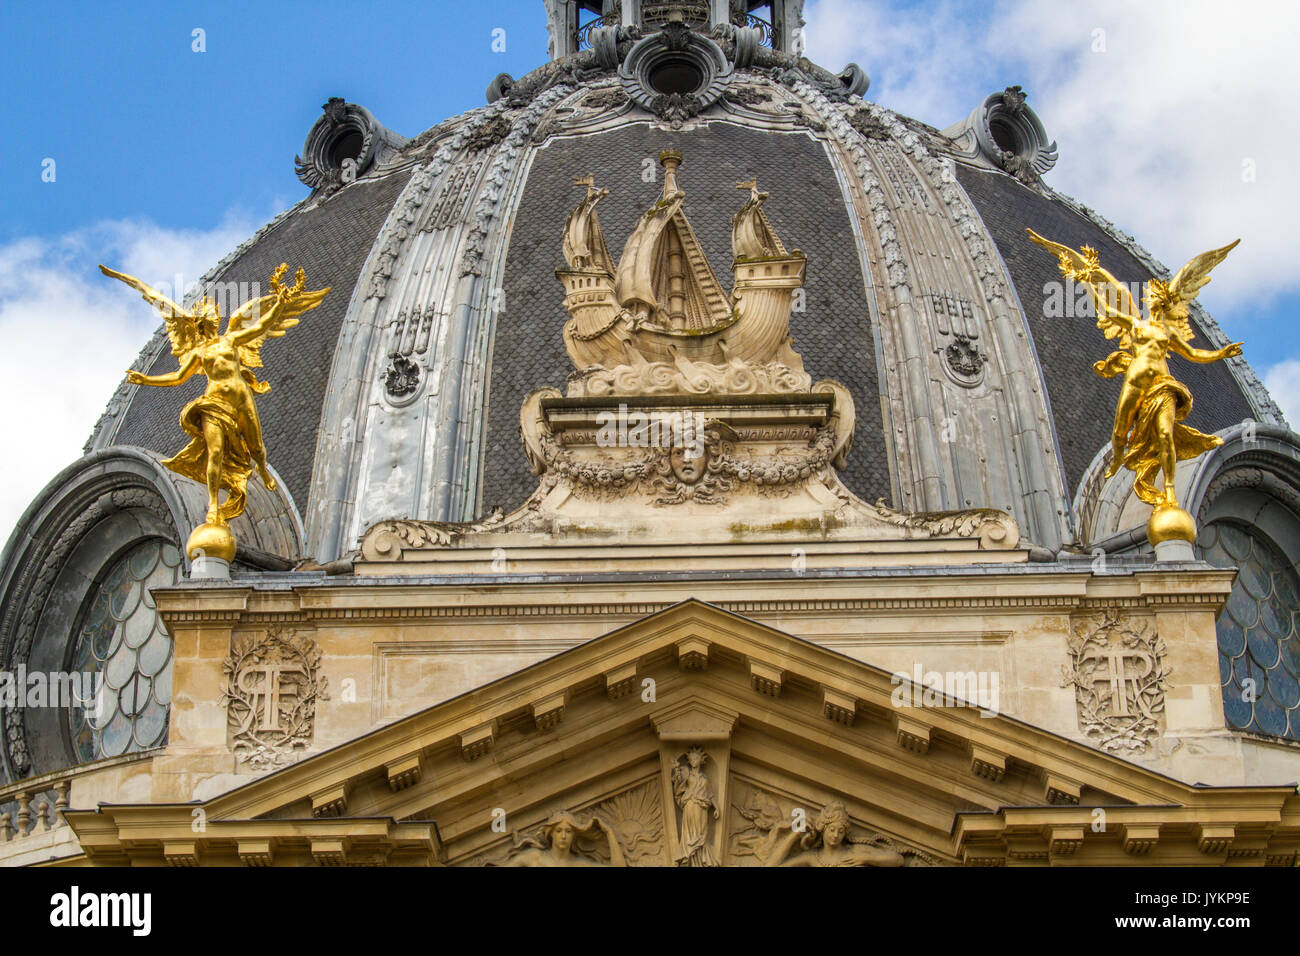 Architectural detail of the Petit Palais, Paris, France. Stock Photo